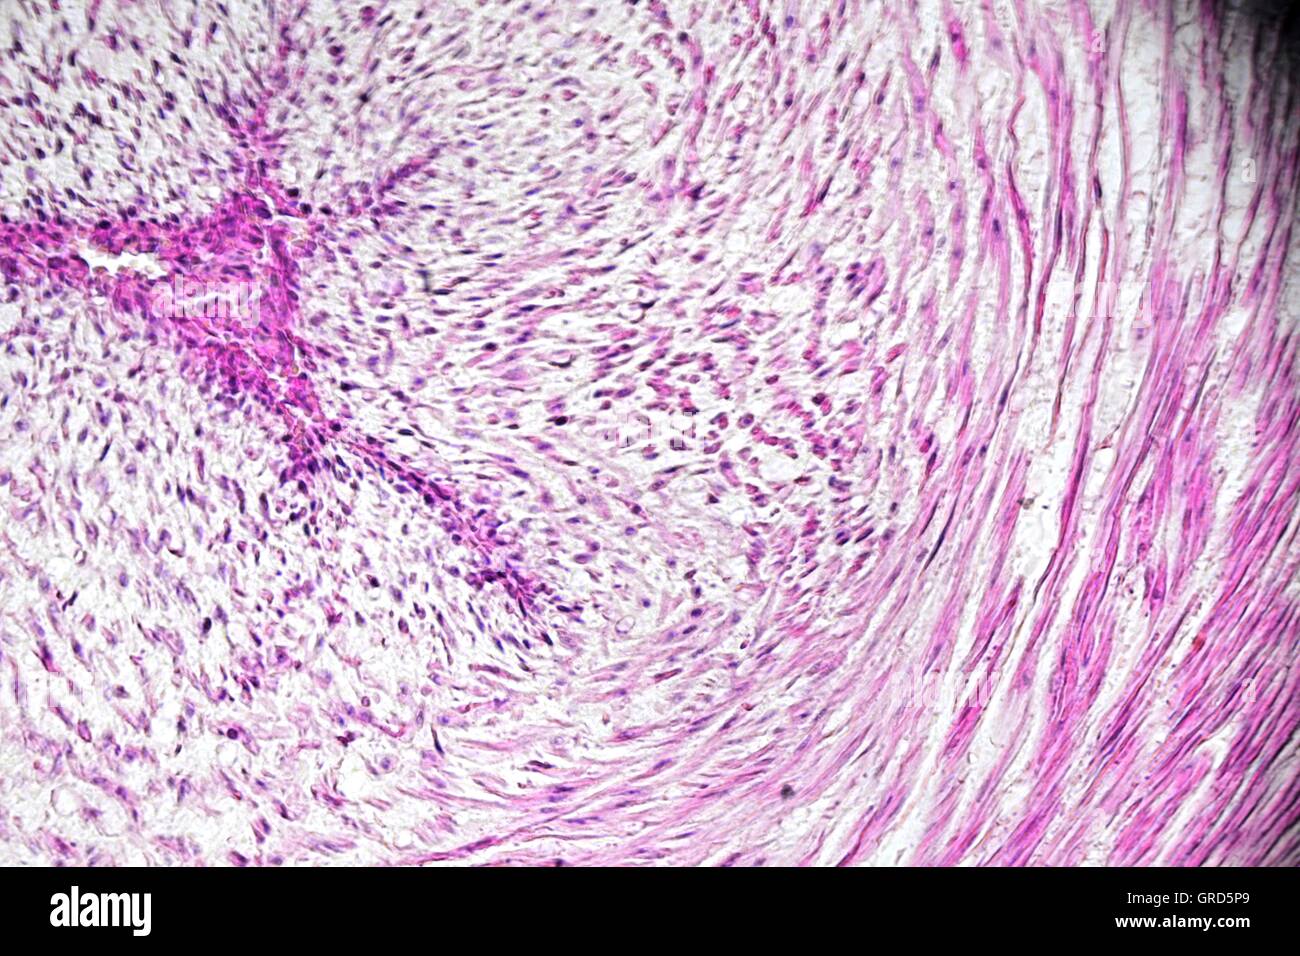 Image microscopique de veine ombilicale humaine Banque D'Images